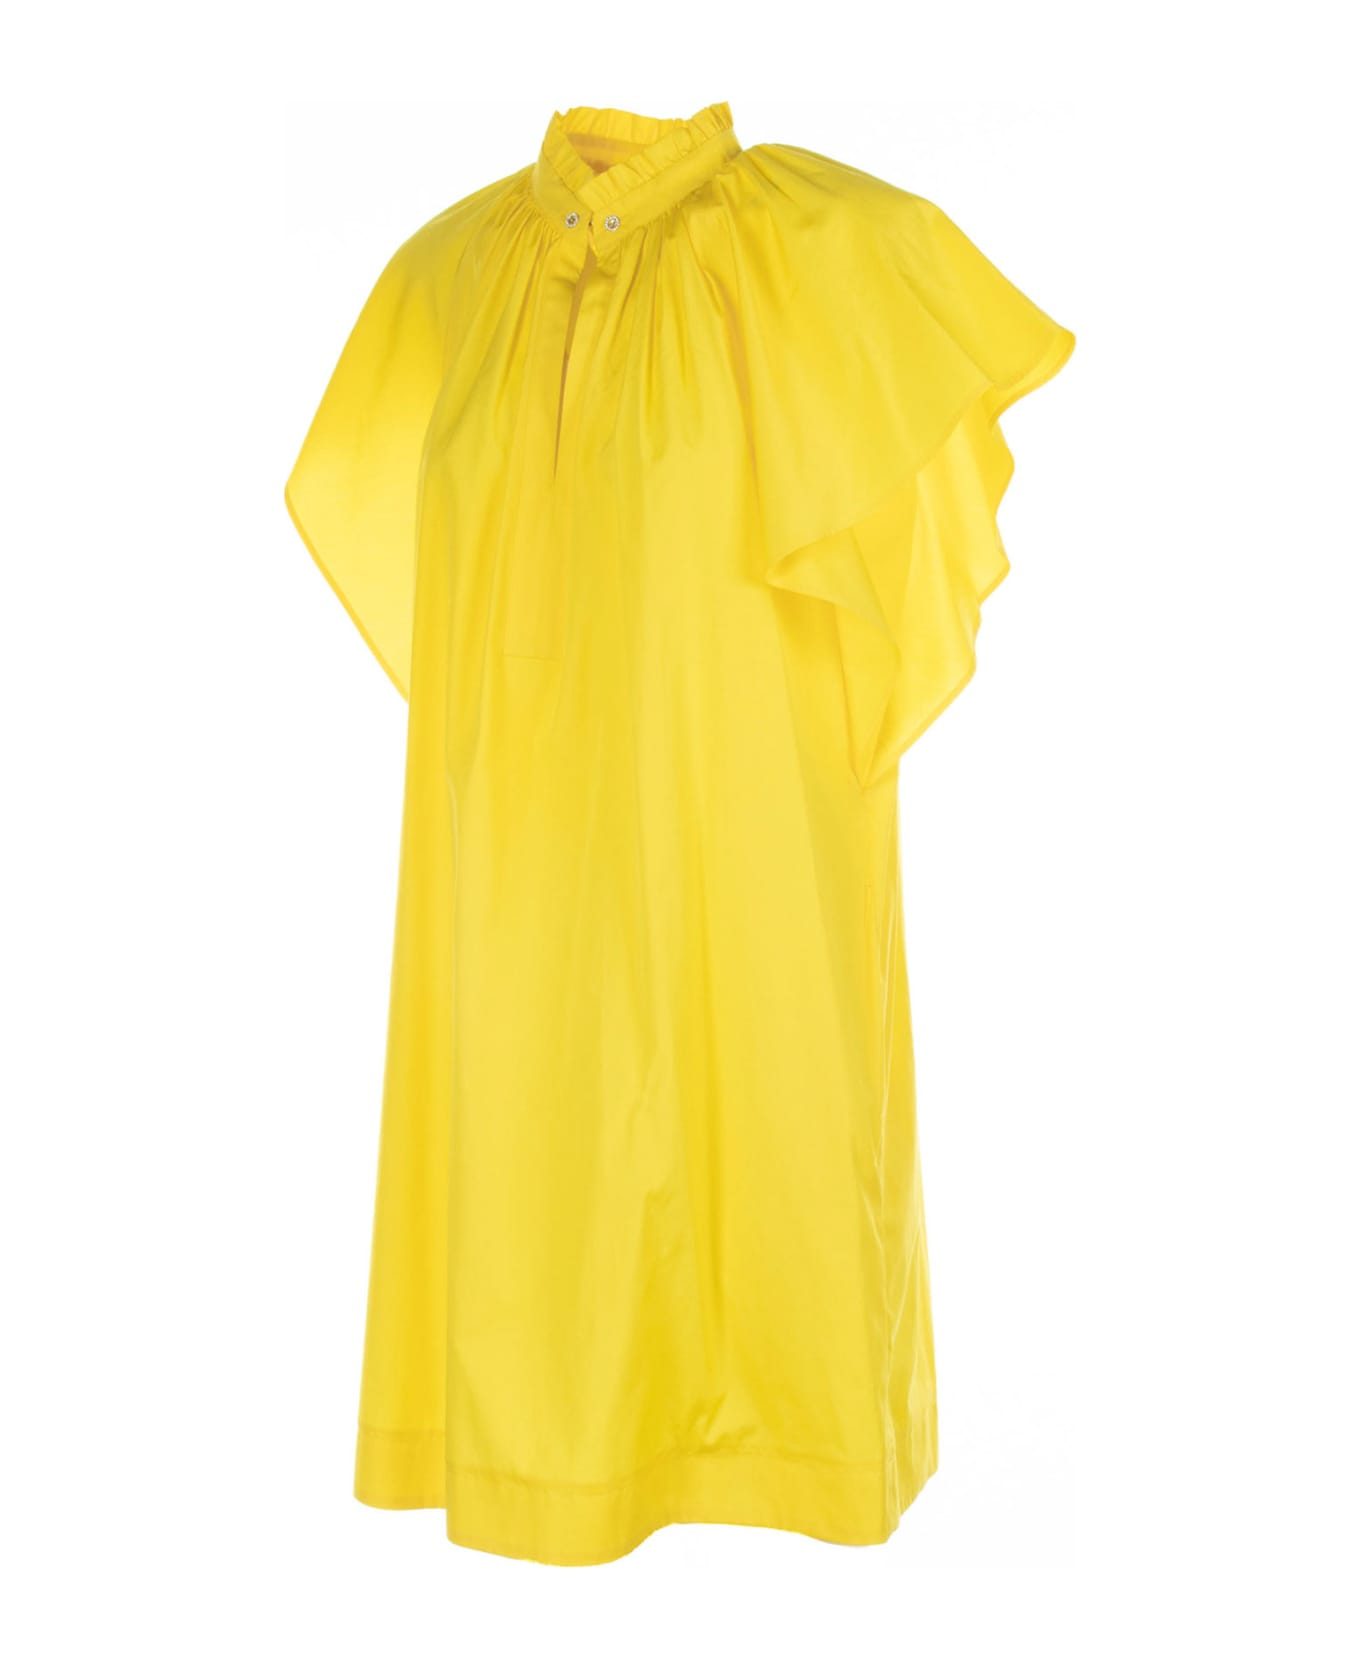 Max Mara Studio Yellow Cotton Midi Dress - GIALLO